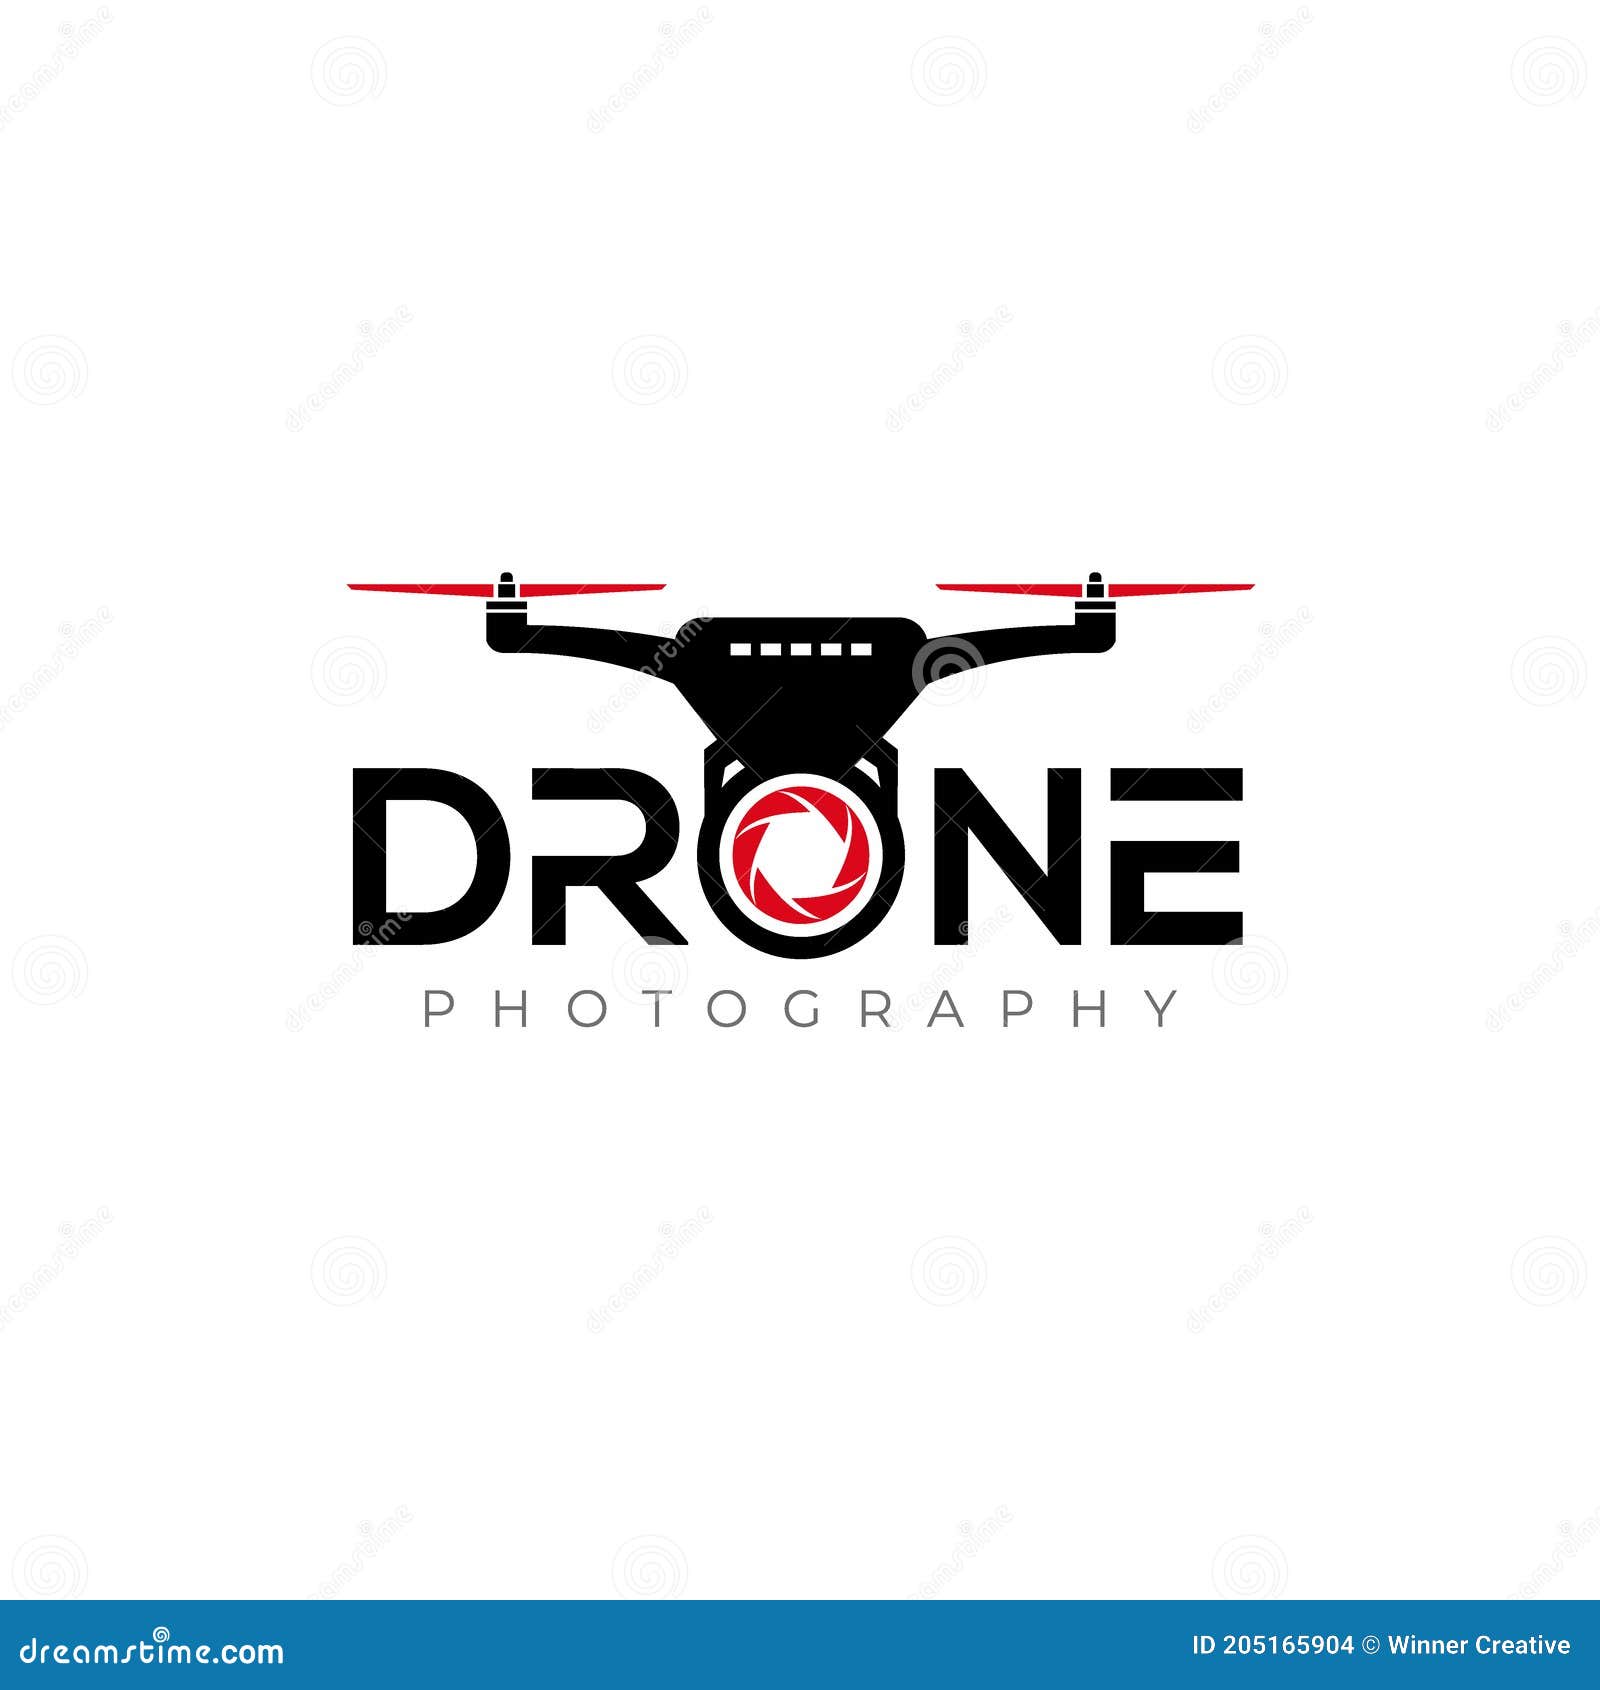 Drone Logo. Drone Photography Logo Design Vector Stock Vector ...